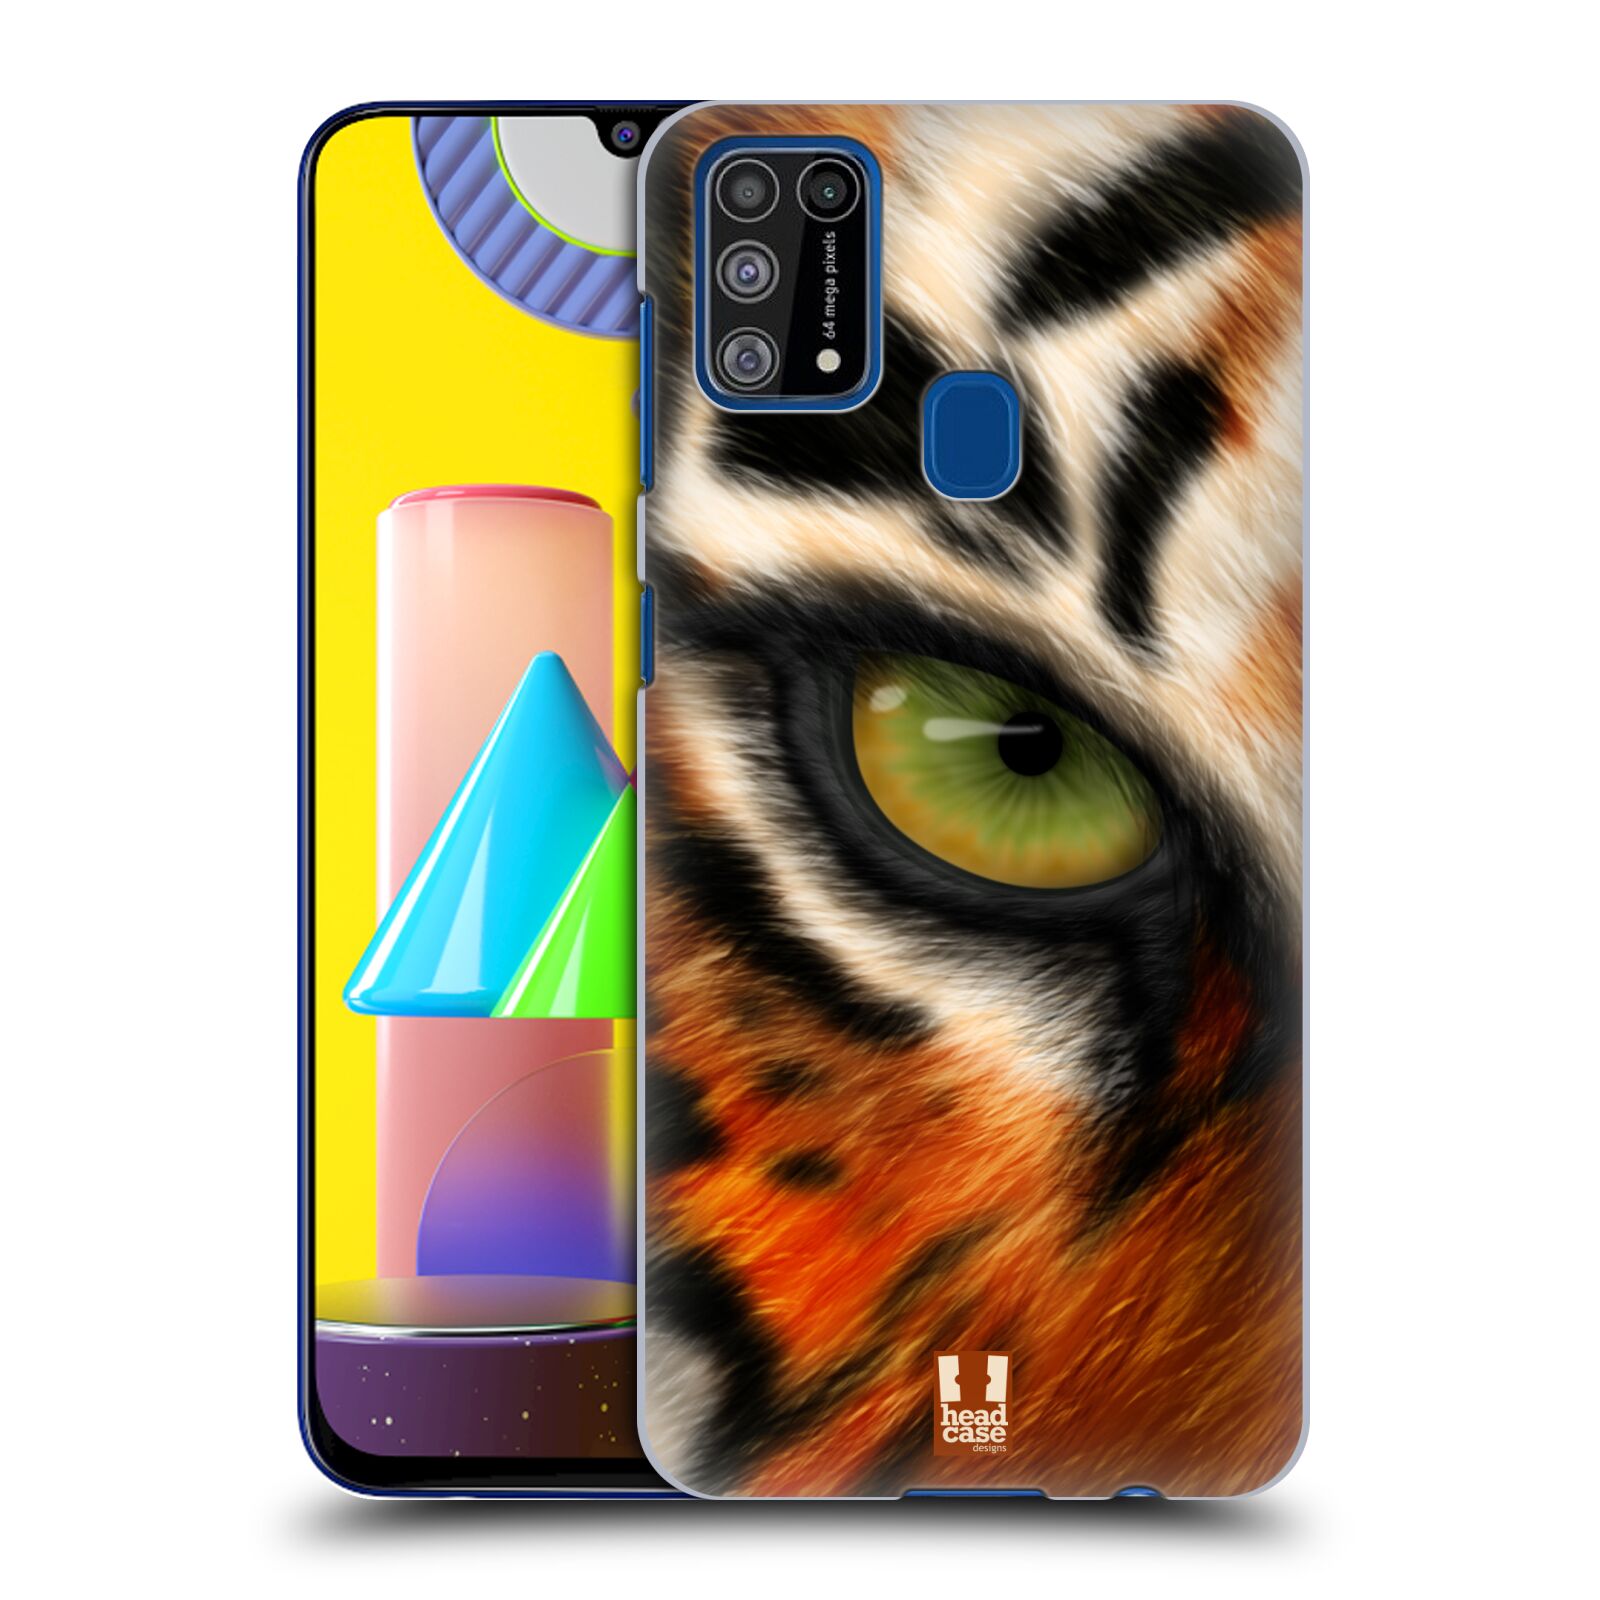 Plastový obal HEAD CASE na mobil Samsung Galaxy M31 vzor pohled zvířete oko tygr